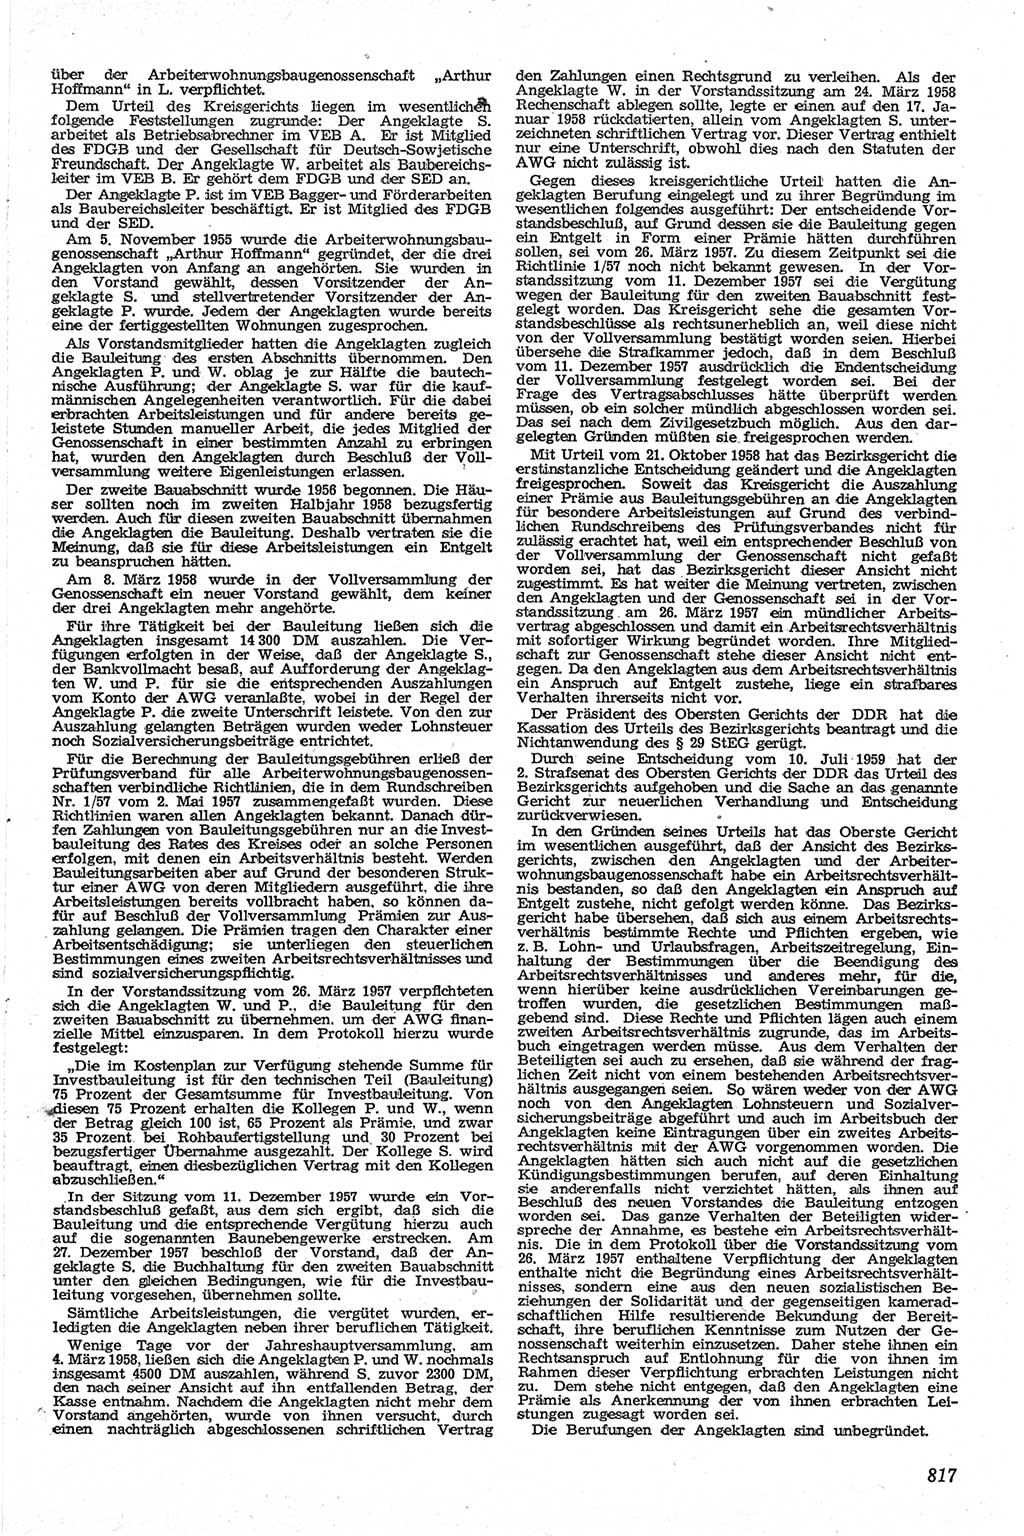 Neue Justiz (NJ), Zeitschrift für Recht und Rechtswissenschaft [Deutsche Demokratische Republik (DDR)], 13. Jahrgang 1959, Seite 817 (NJ DDR 1959, S. 817)